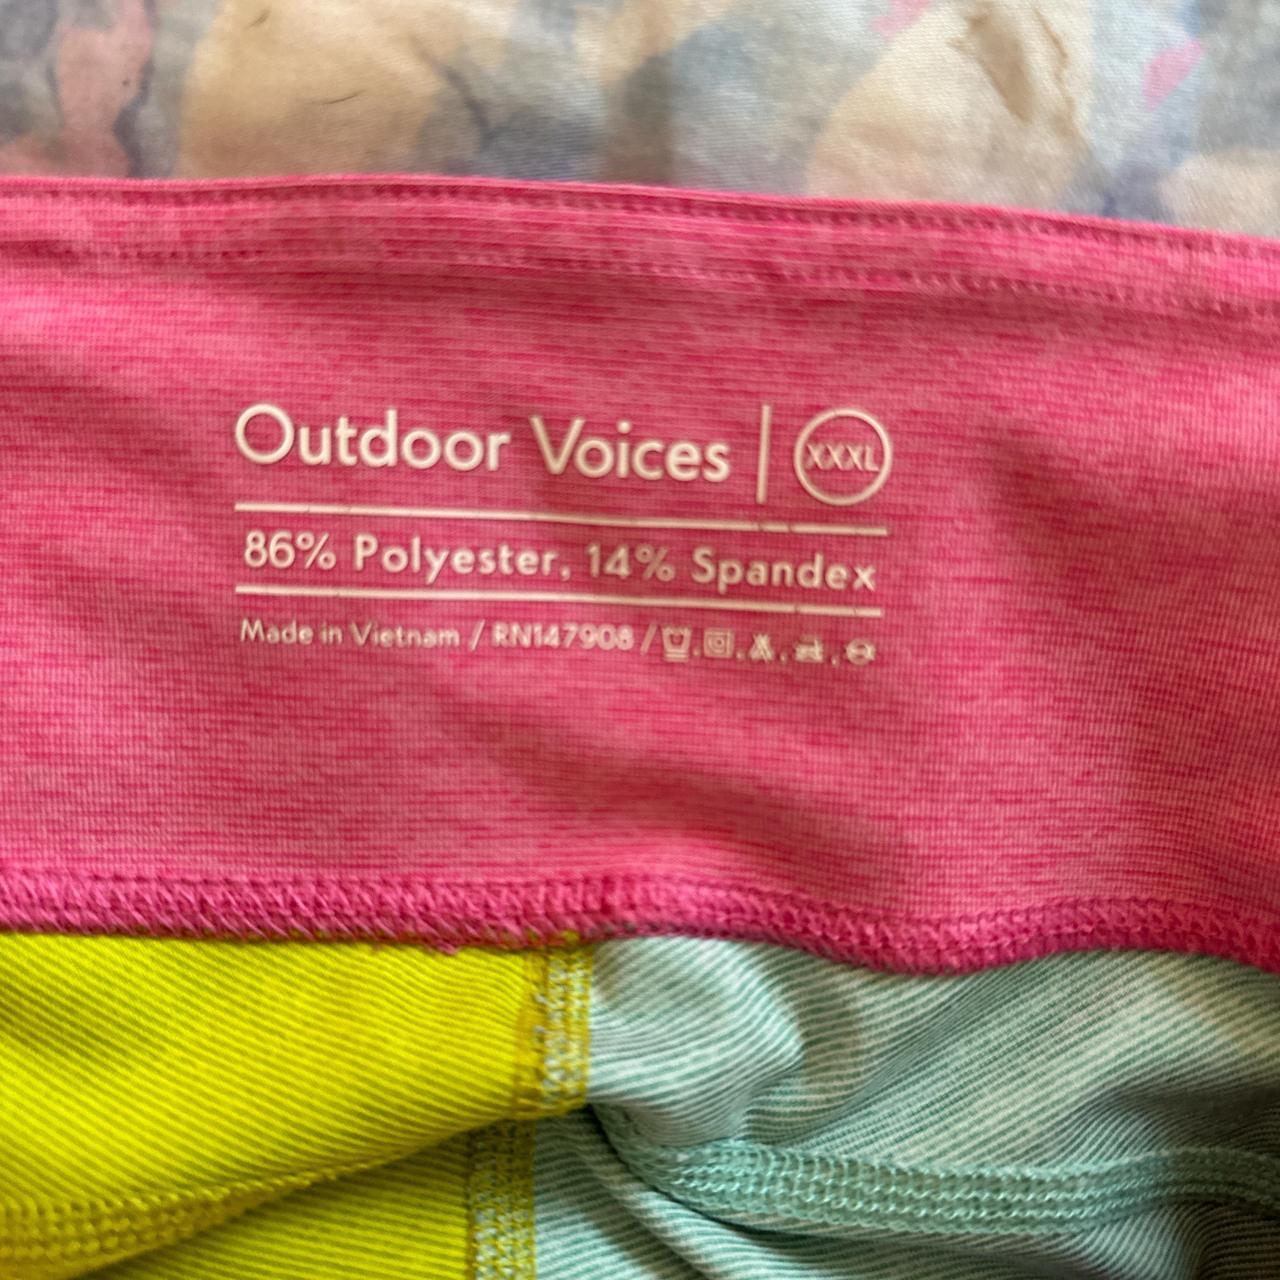 Outdoor Voices RecTrek Colorblock 3” Short in orange - Depop